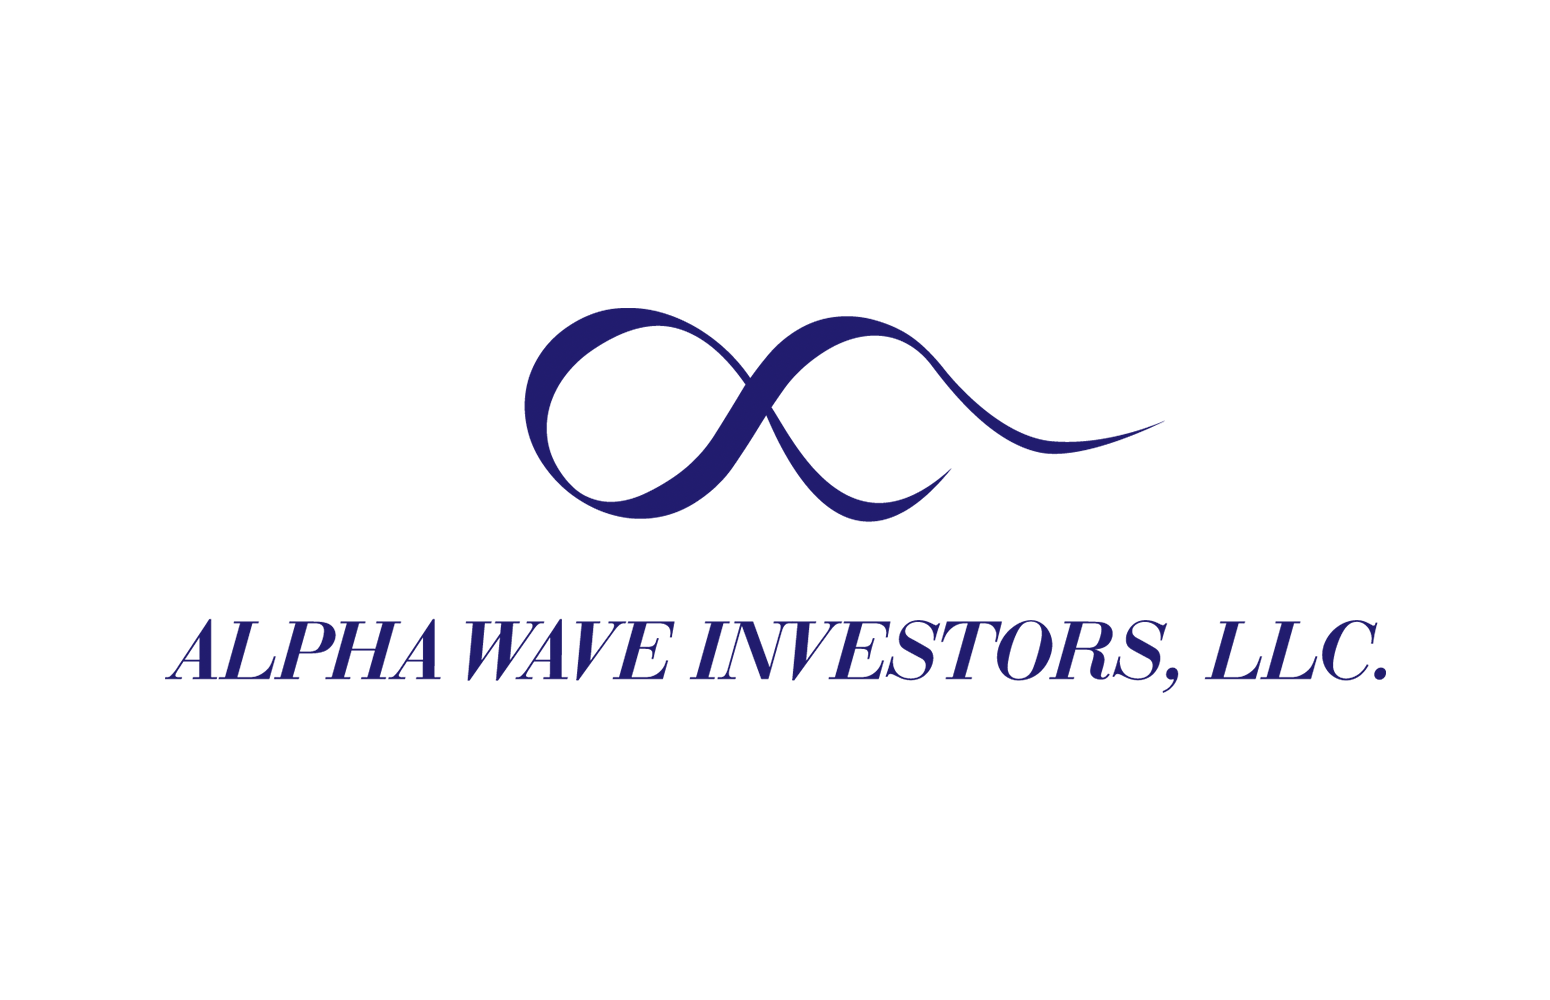 Alpha Wave Investors